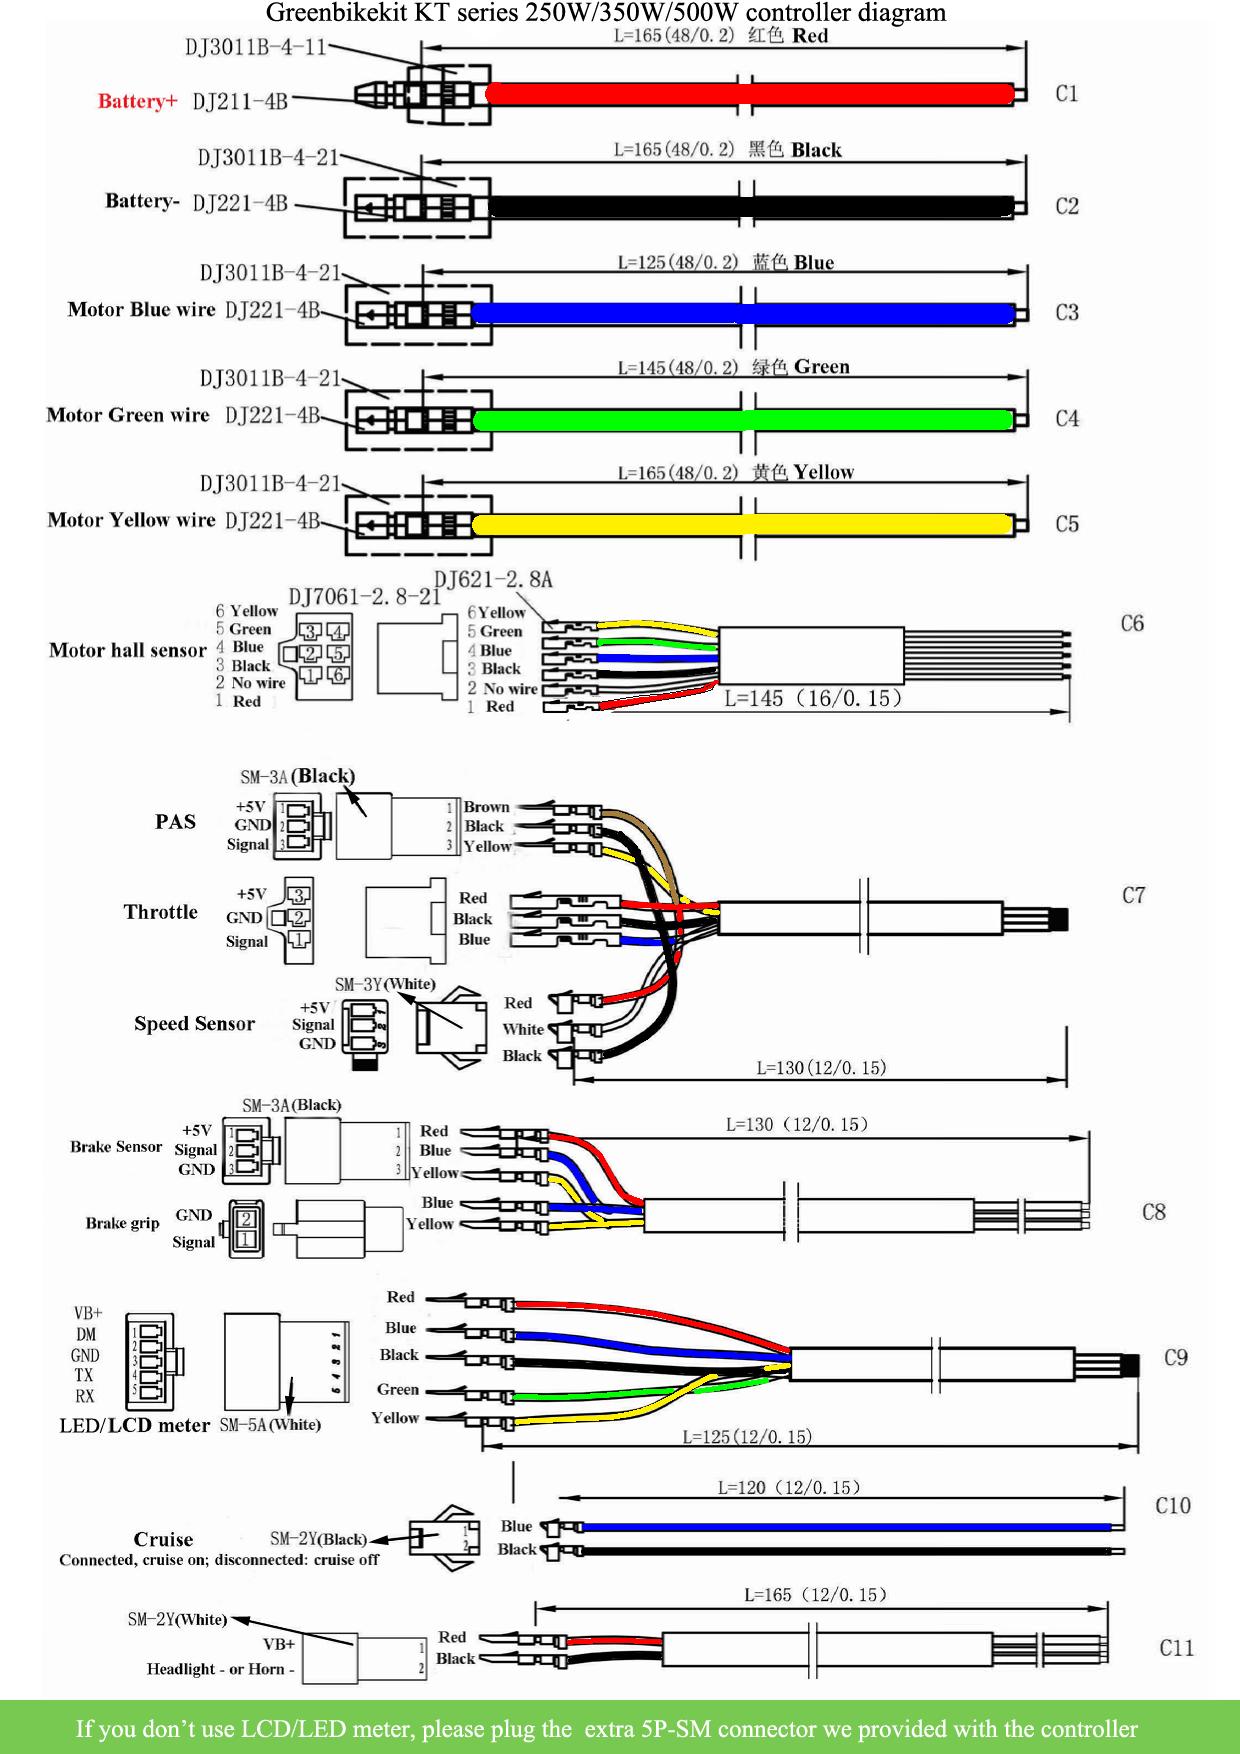 Chargeur rapide Norme CE tous models Type prise Gx16 Voltage 48 Volts  Puissance 5 Ampères